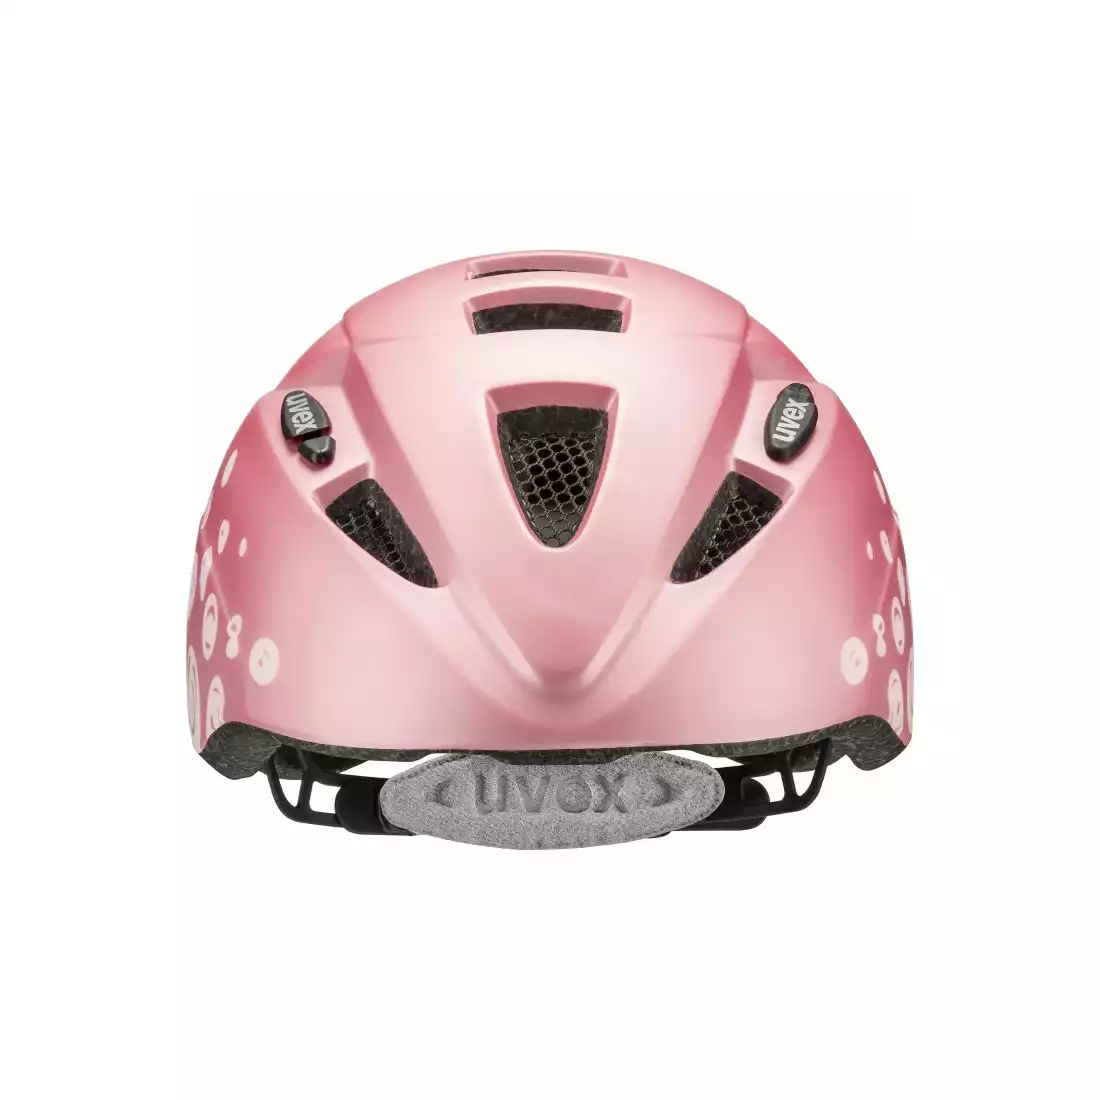 UVEX Kid 2 cc kask rowerowy dziecięcy pink polka dots